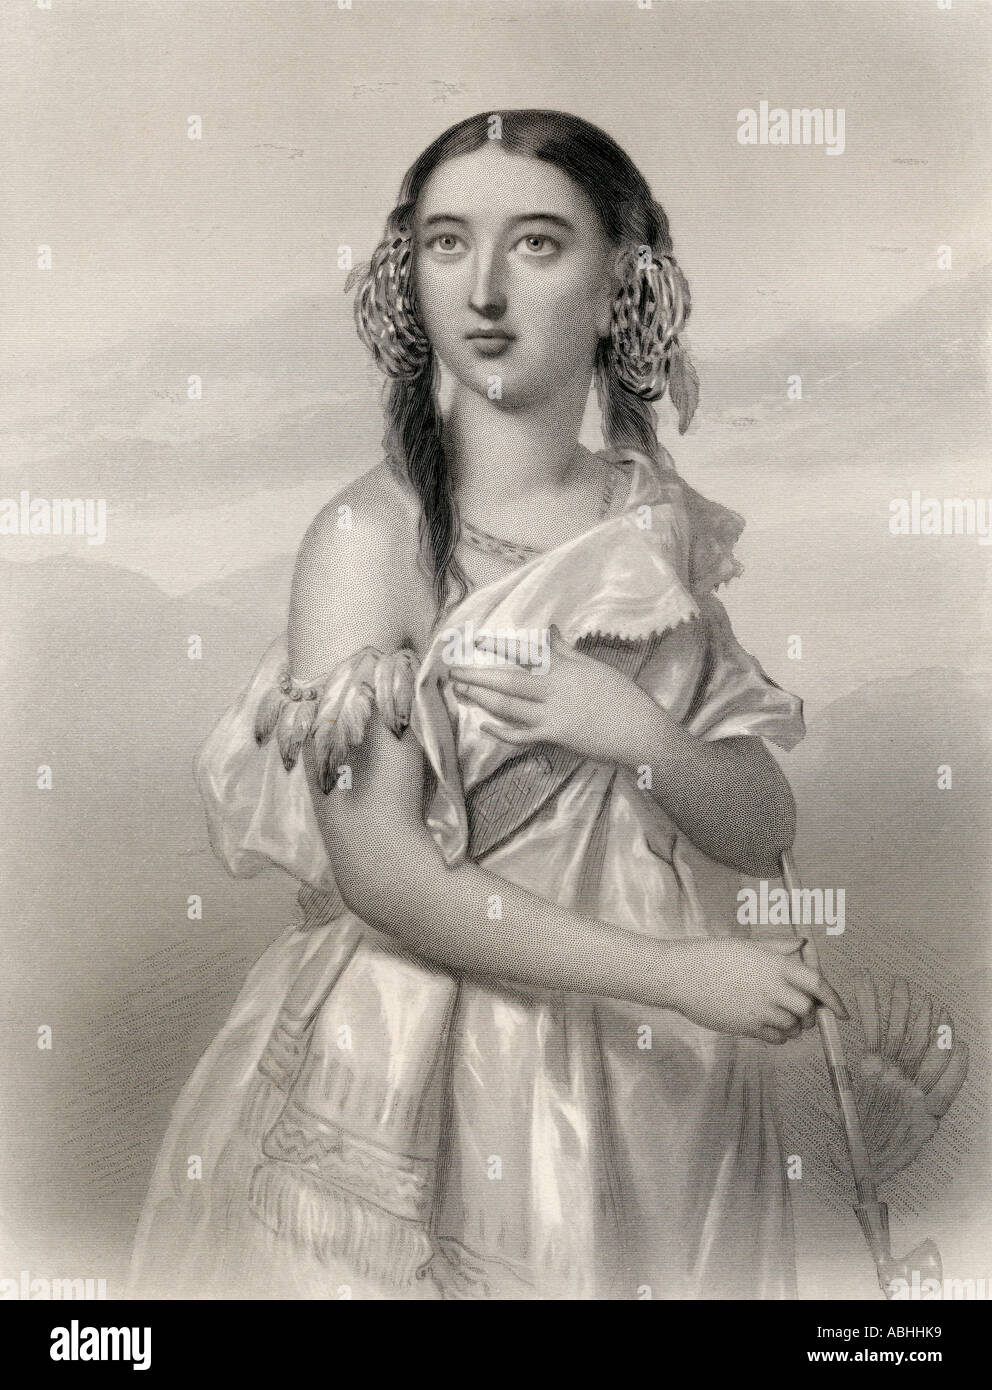 Pocahontas geborene Matoaka, bekannt als Amonute, ca. 1596 - 1617. Gebürtige Amerikanerin, die mit der kolonialen Siedlung in Jamestown, Virginia in Verbindung gebracht wird. Stockfoto